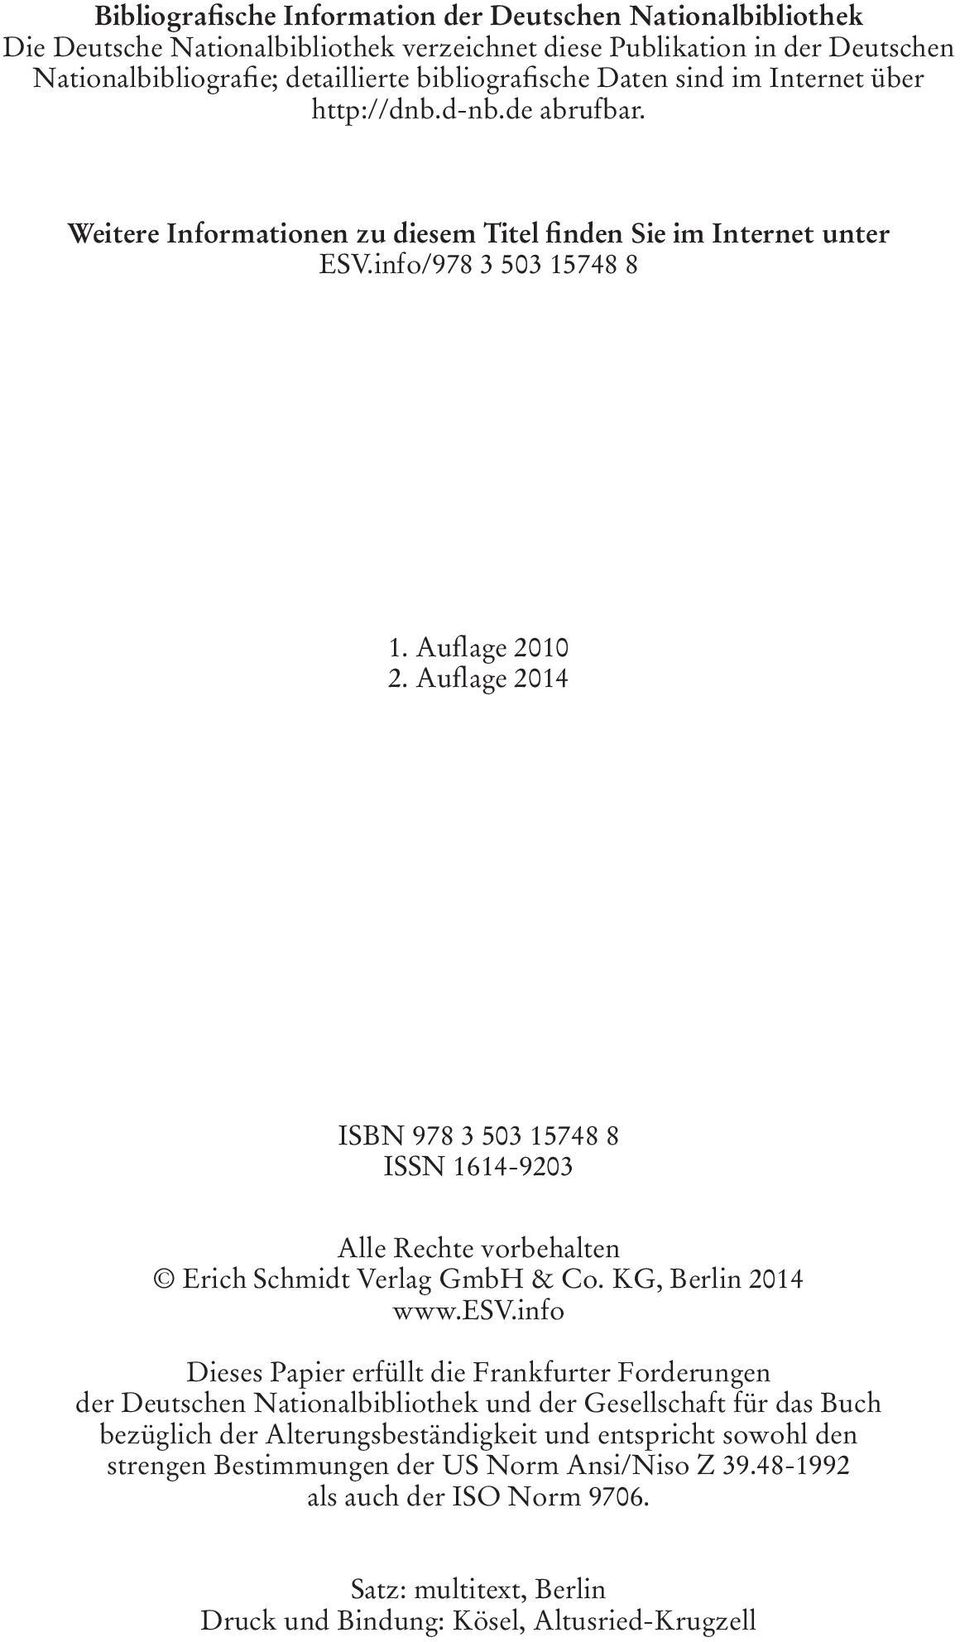 Auflage 2014 ISBN 978 3 503 15748 8 ISSN 1614-9203 Alle Rechte vorbehalten Erich Schmidt Verlag GmbH & Co. KG, Berlin 2014 www.esv.